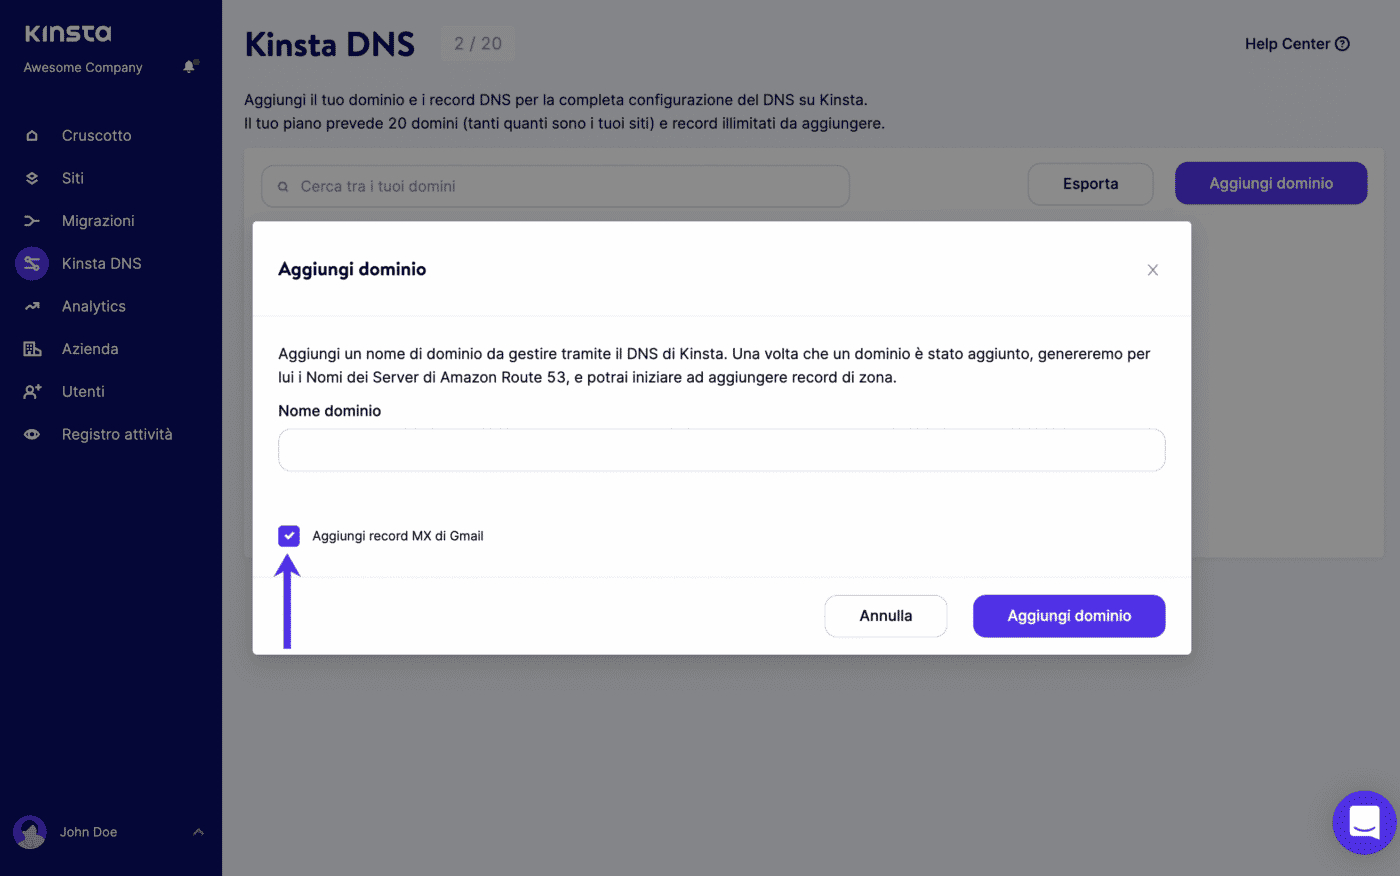 Aggiungere i record MX di Gmail quando aggiungete un dominio in Kinsta DNS.